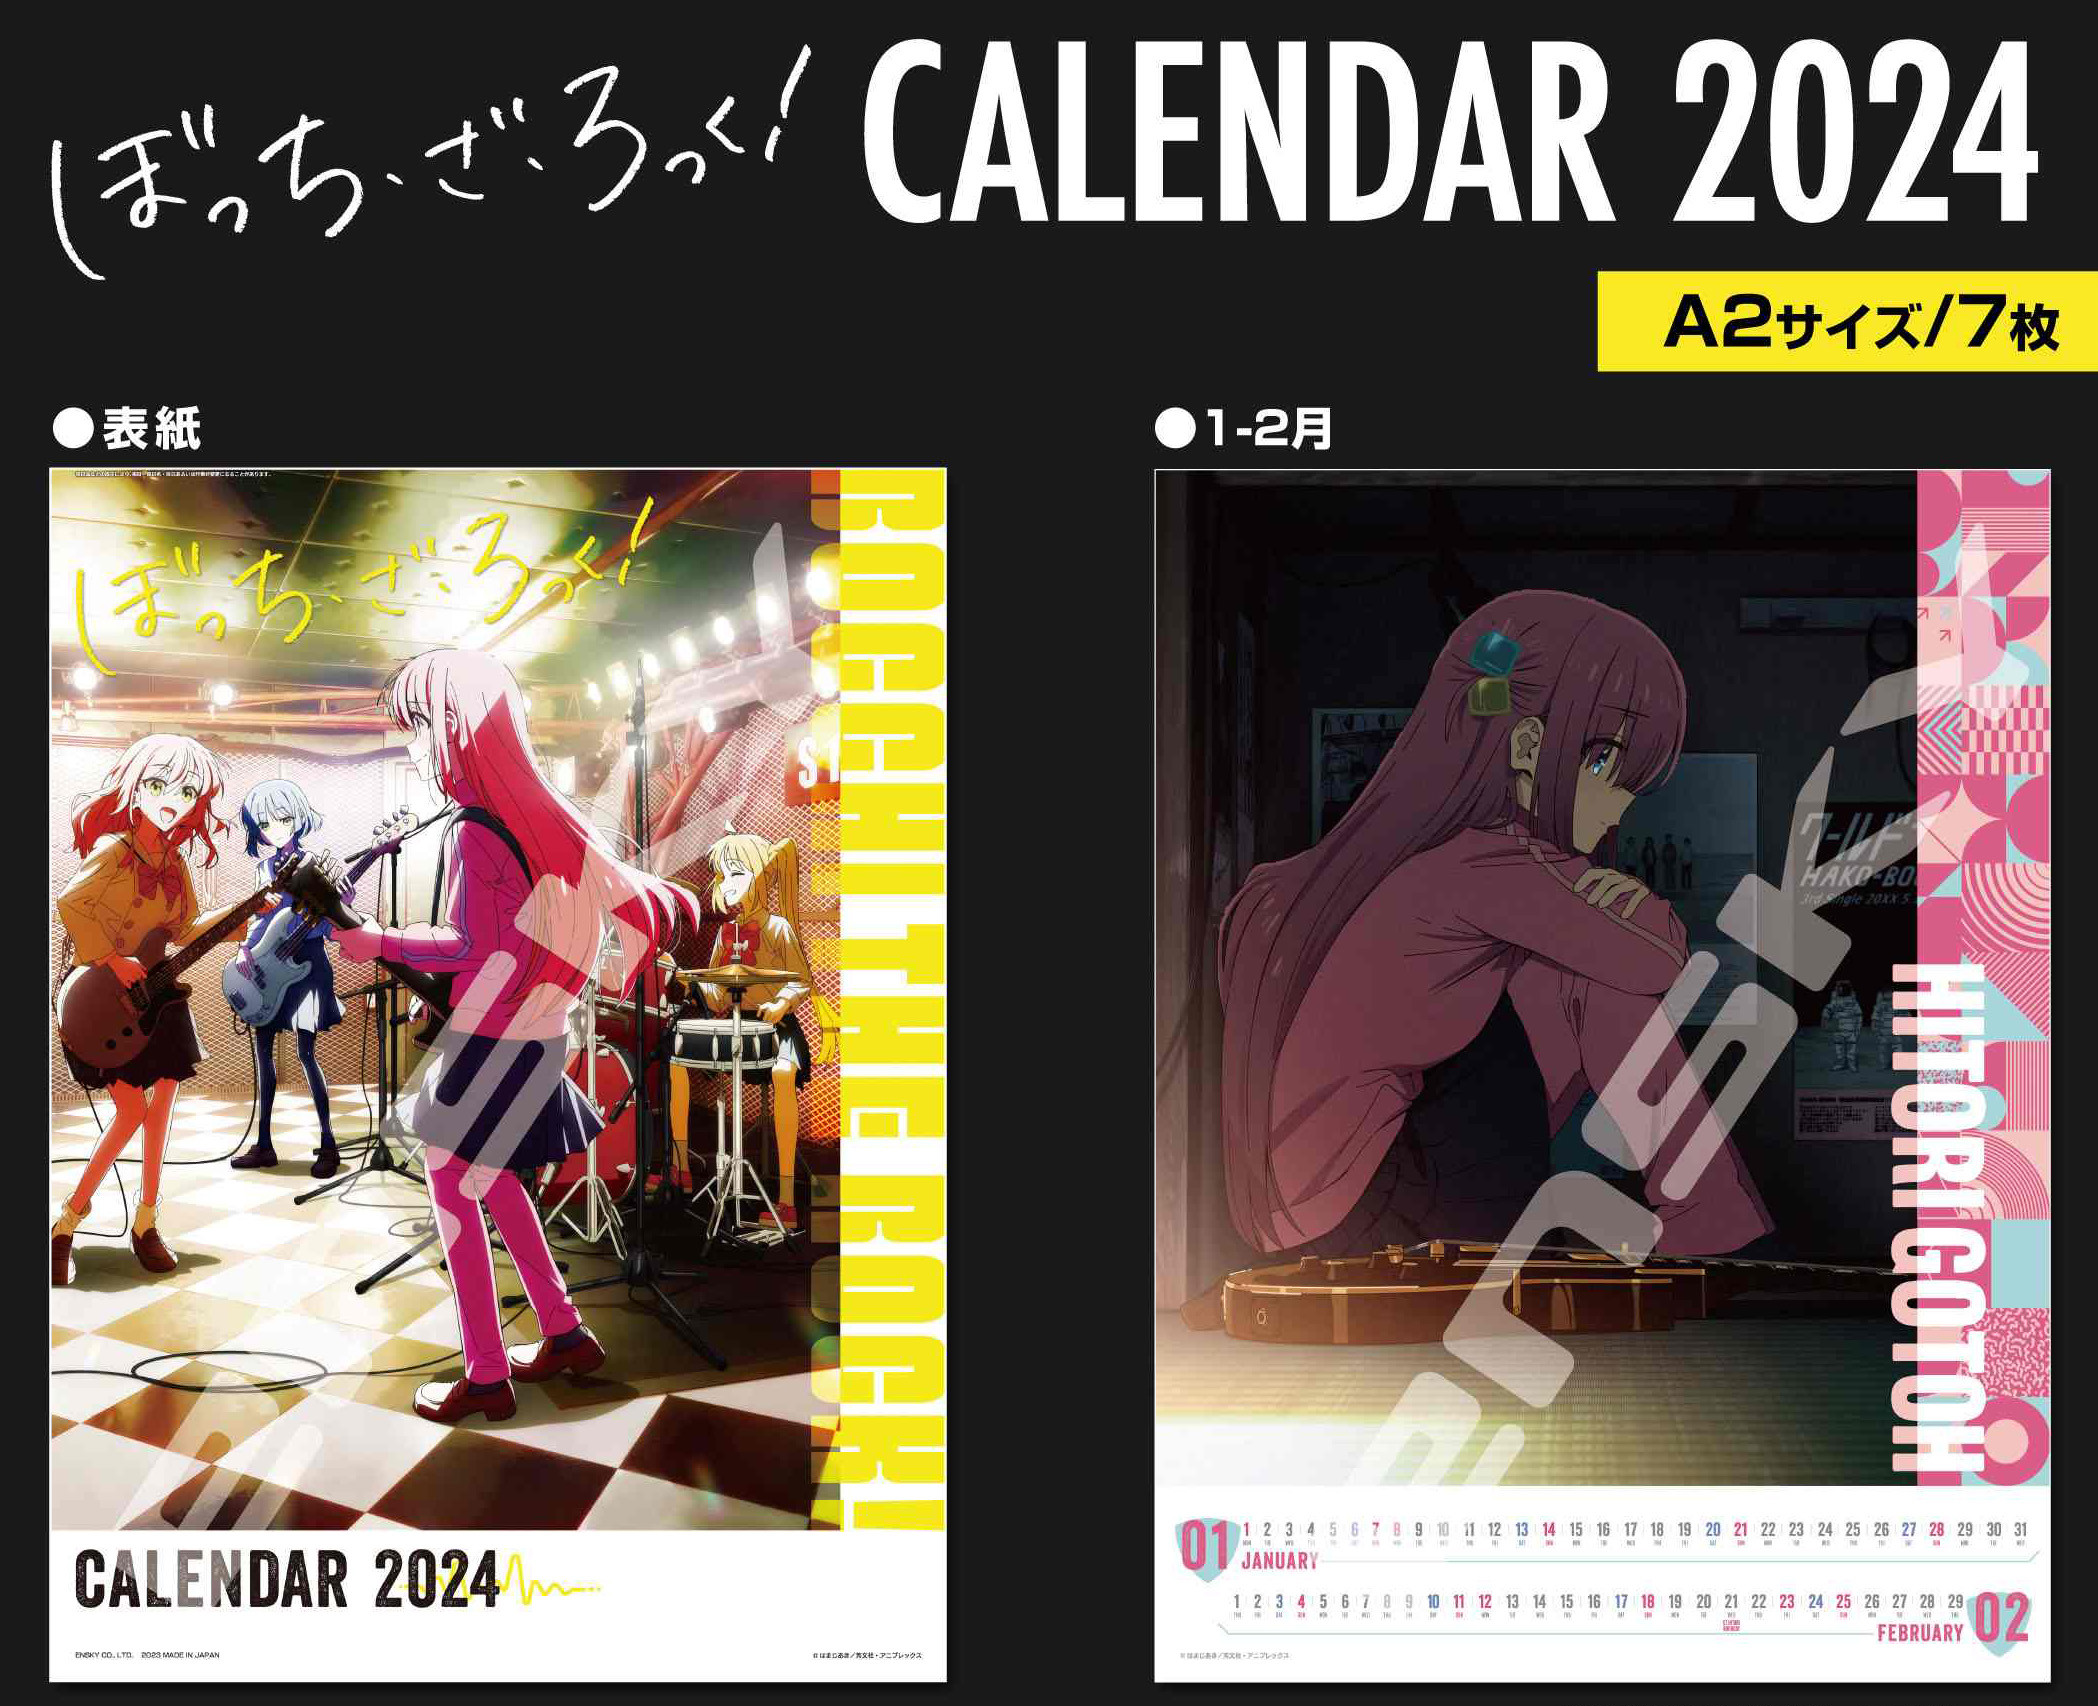 Calendars | Tokyo Otaku Mode (TOM) Shop: Figures & Merch From Japan